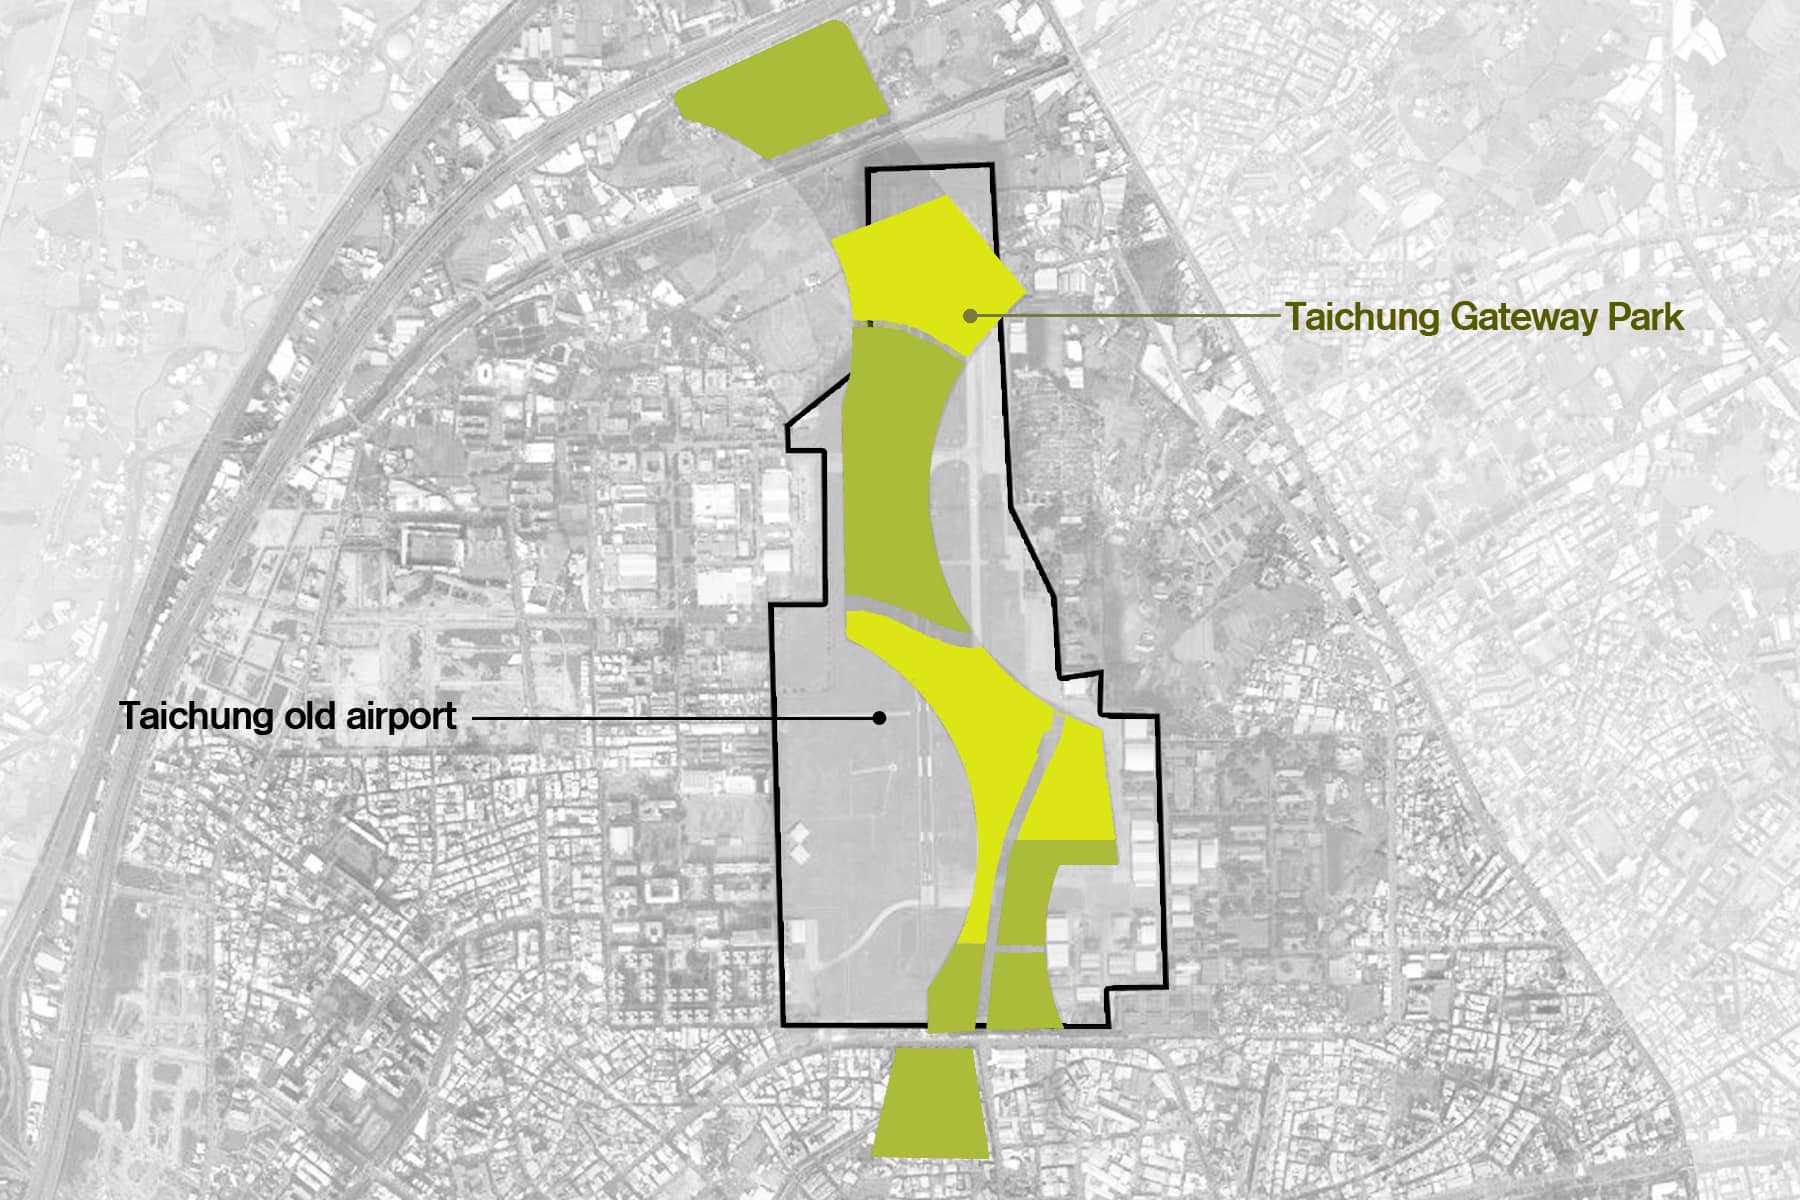 A modo de gran pulmón verde, se plantea una red de equipamientos y zonas verdes bajo un esquema de paseos en el aeropuerto de Taichung.